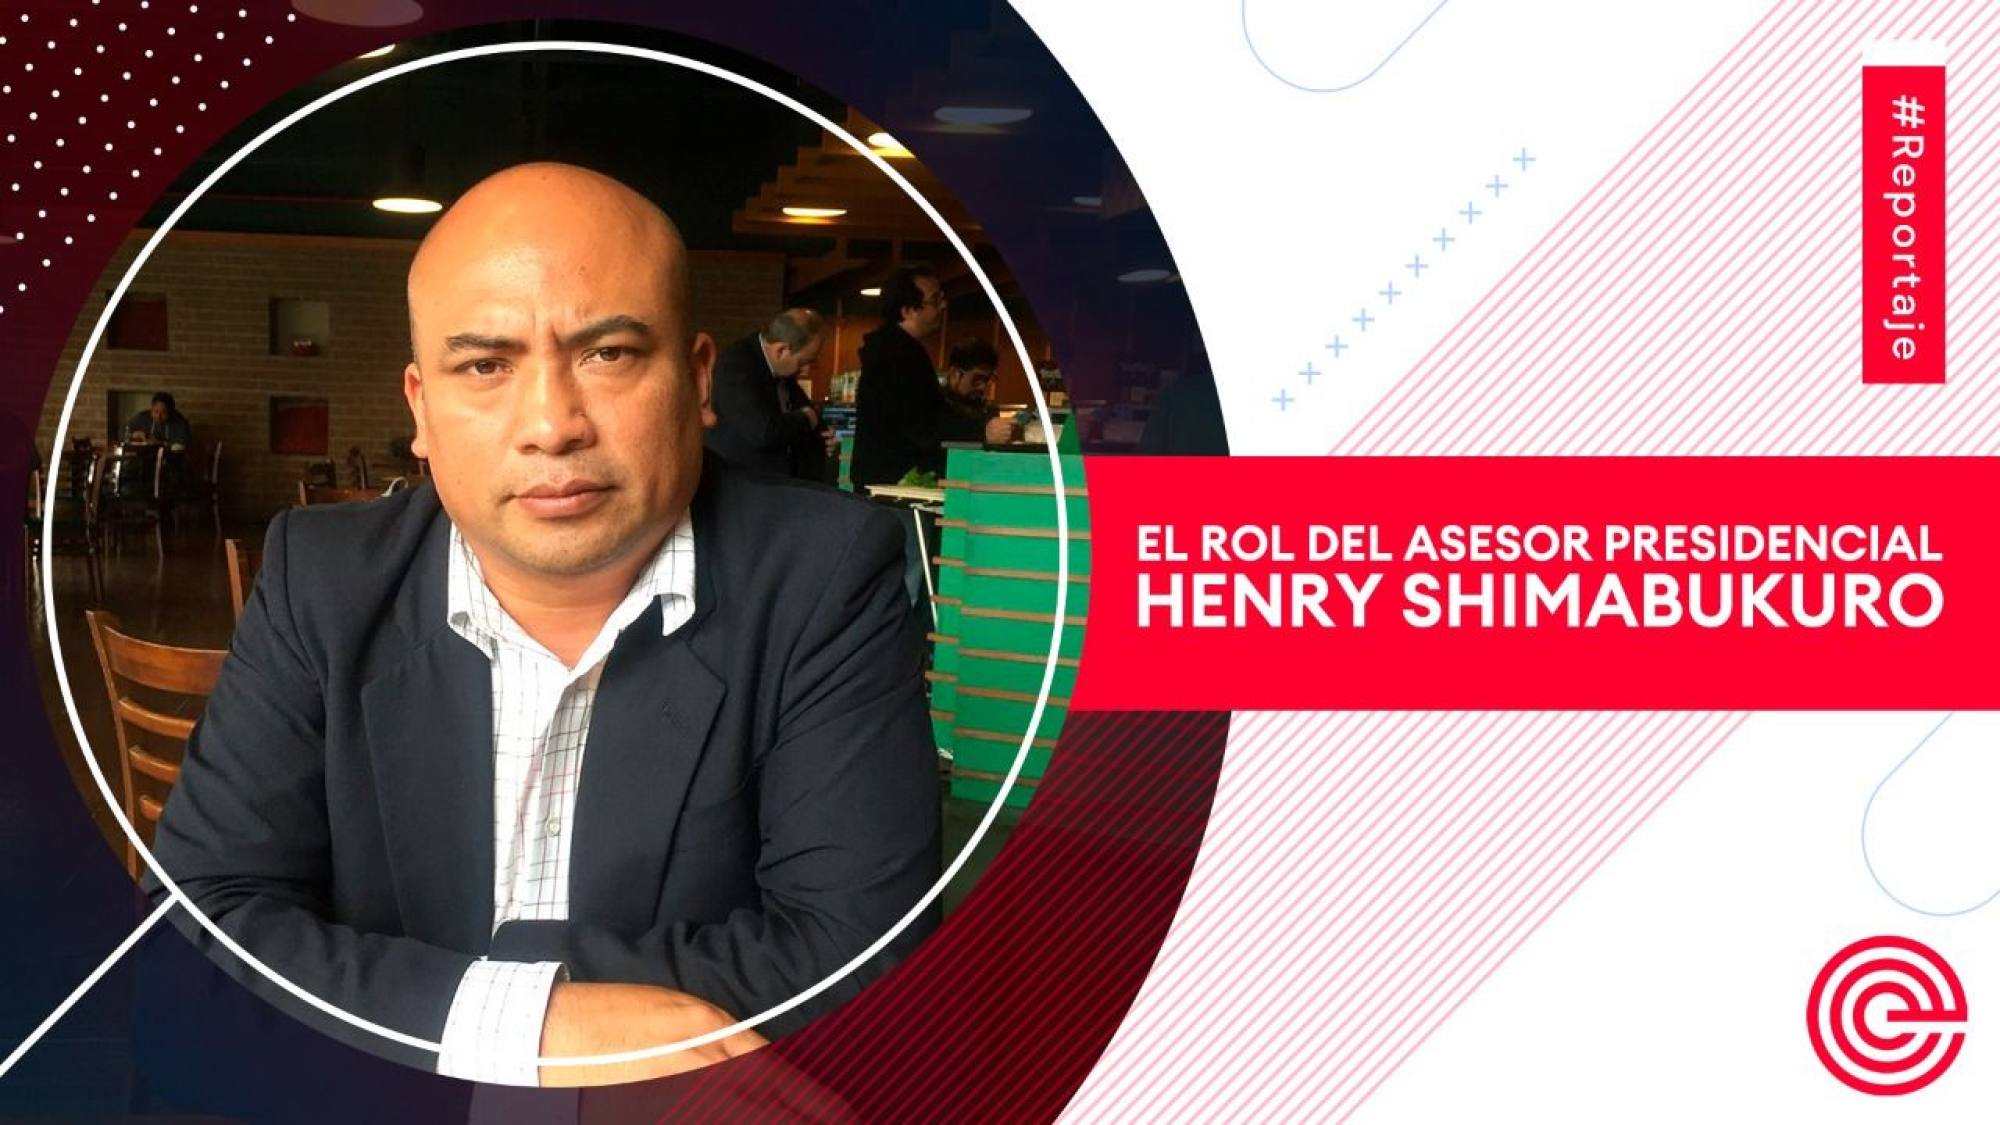 El rol del asesor presidencial Henry Shimabukuro, Epicentro TV